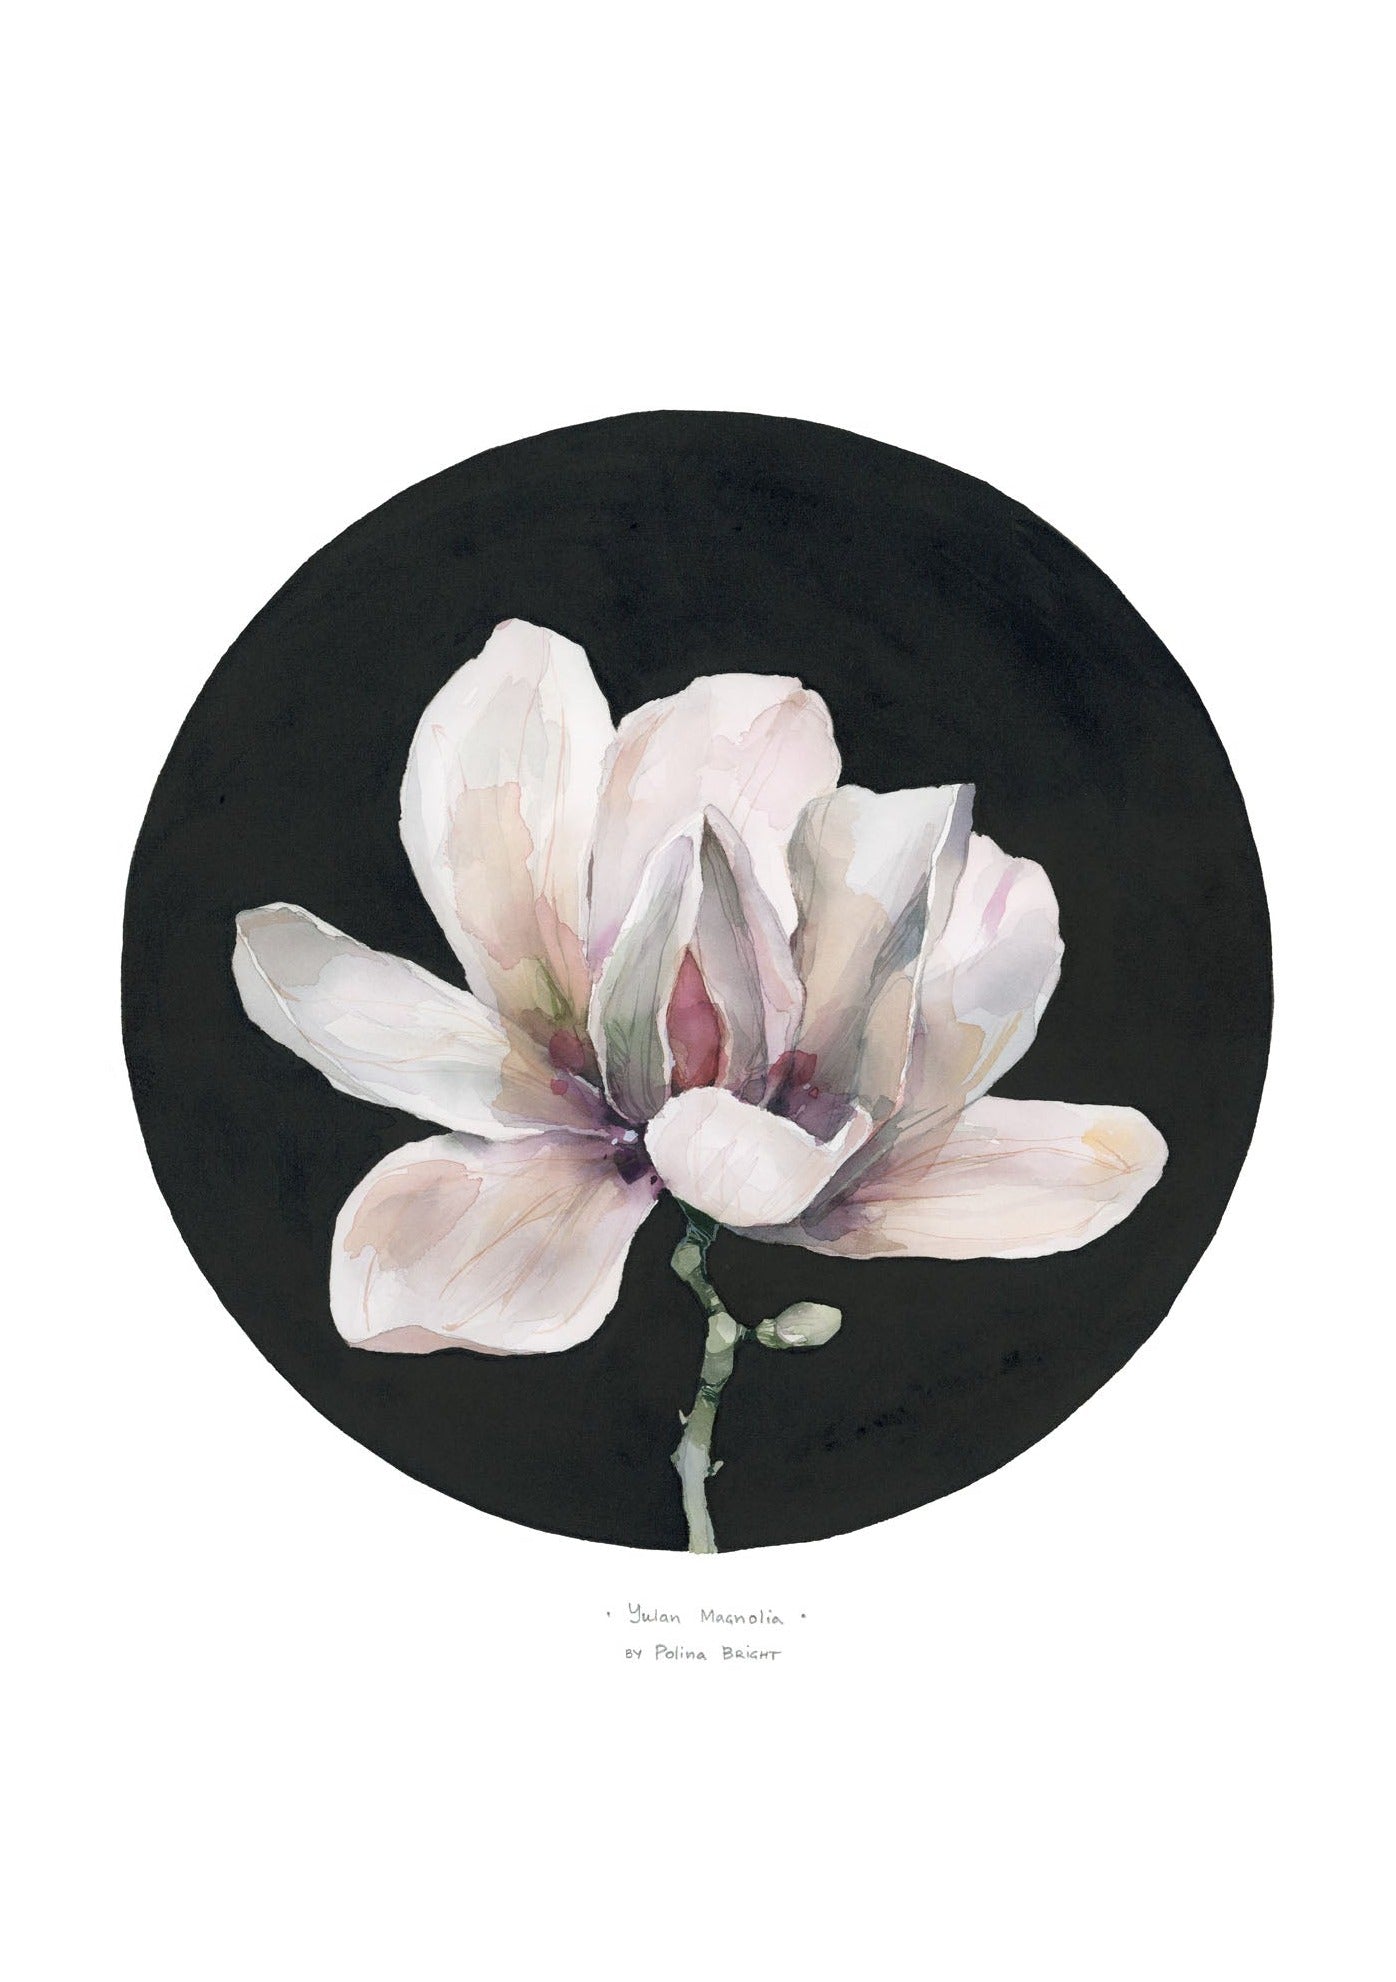 Yulan magnolia print by Polina Bright